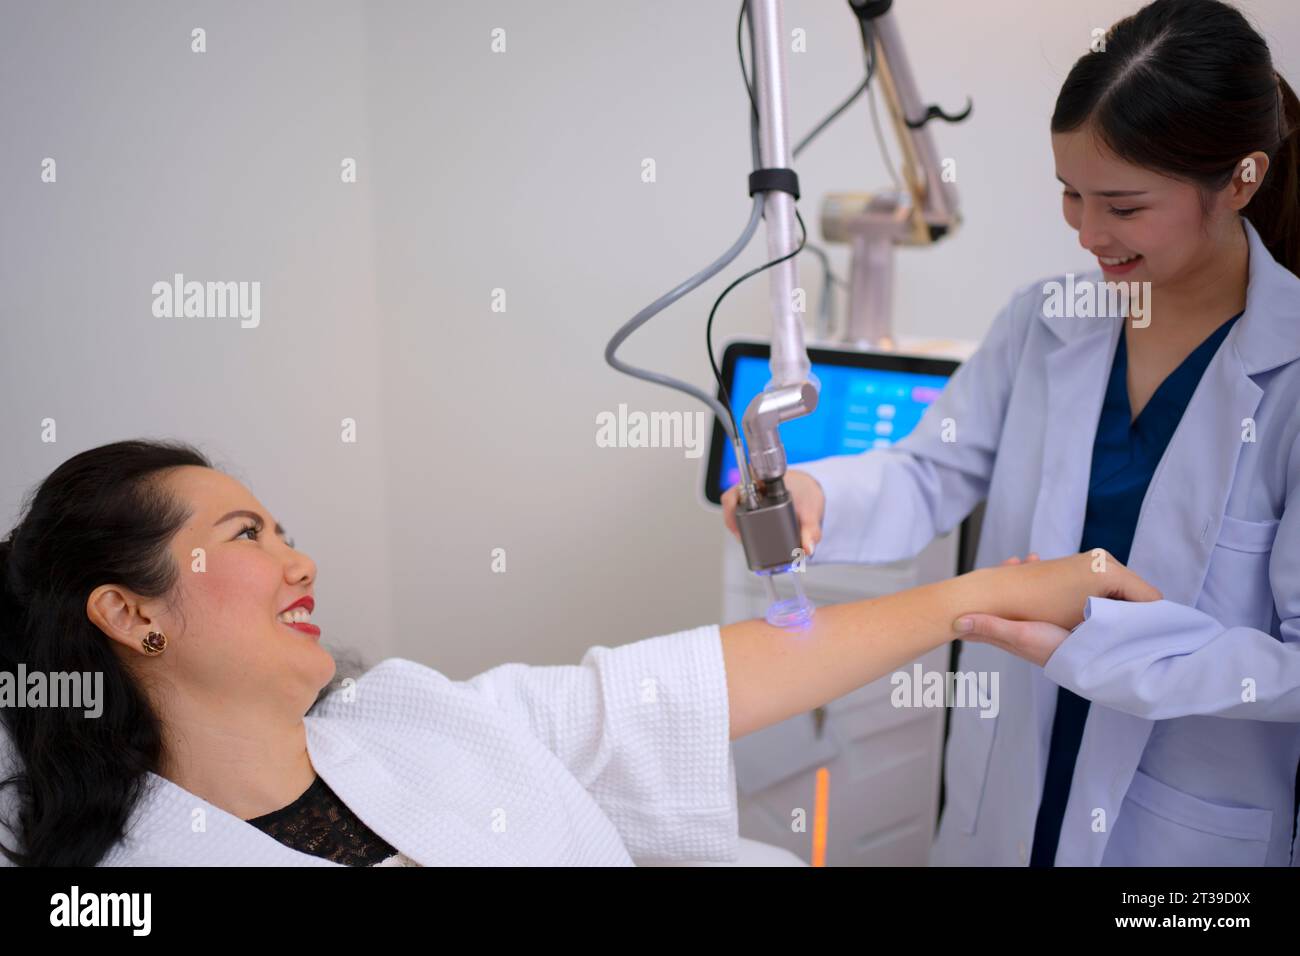 Una bella donna va a usare il servizio alla clinica di bellezza. Concetto di bellezza e assistenza sanitaria. Foto Stock